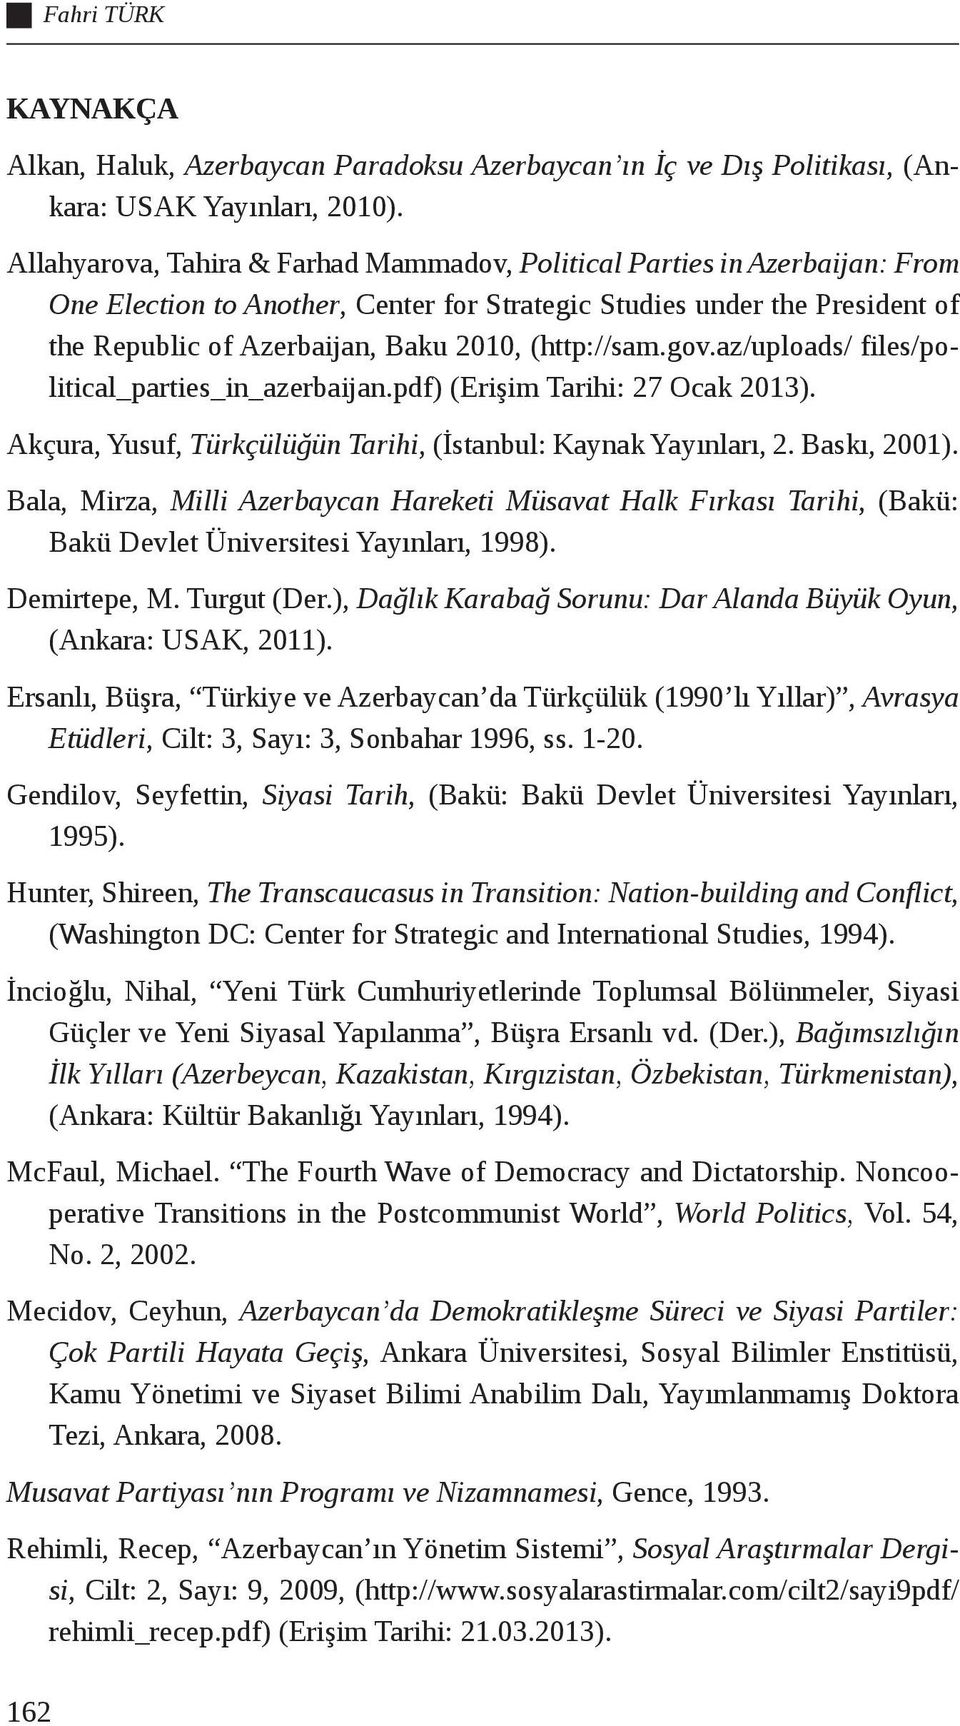 (http://sam.gov.az/uploads/ files/political_parties_in_azerbaijan.pdf) (Erişim Tarihi: 27 Ocak 2013). Akçura, Yusuf, Türkçülüğün Tarihi, (İstanbul: Kaynak Yayınları, 2. Baskı, 2001).